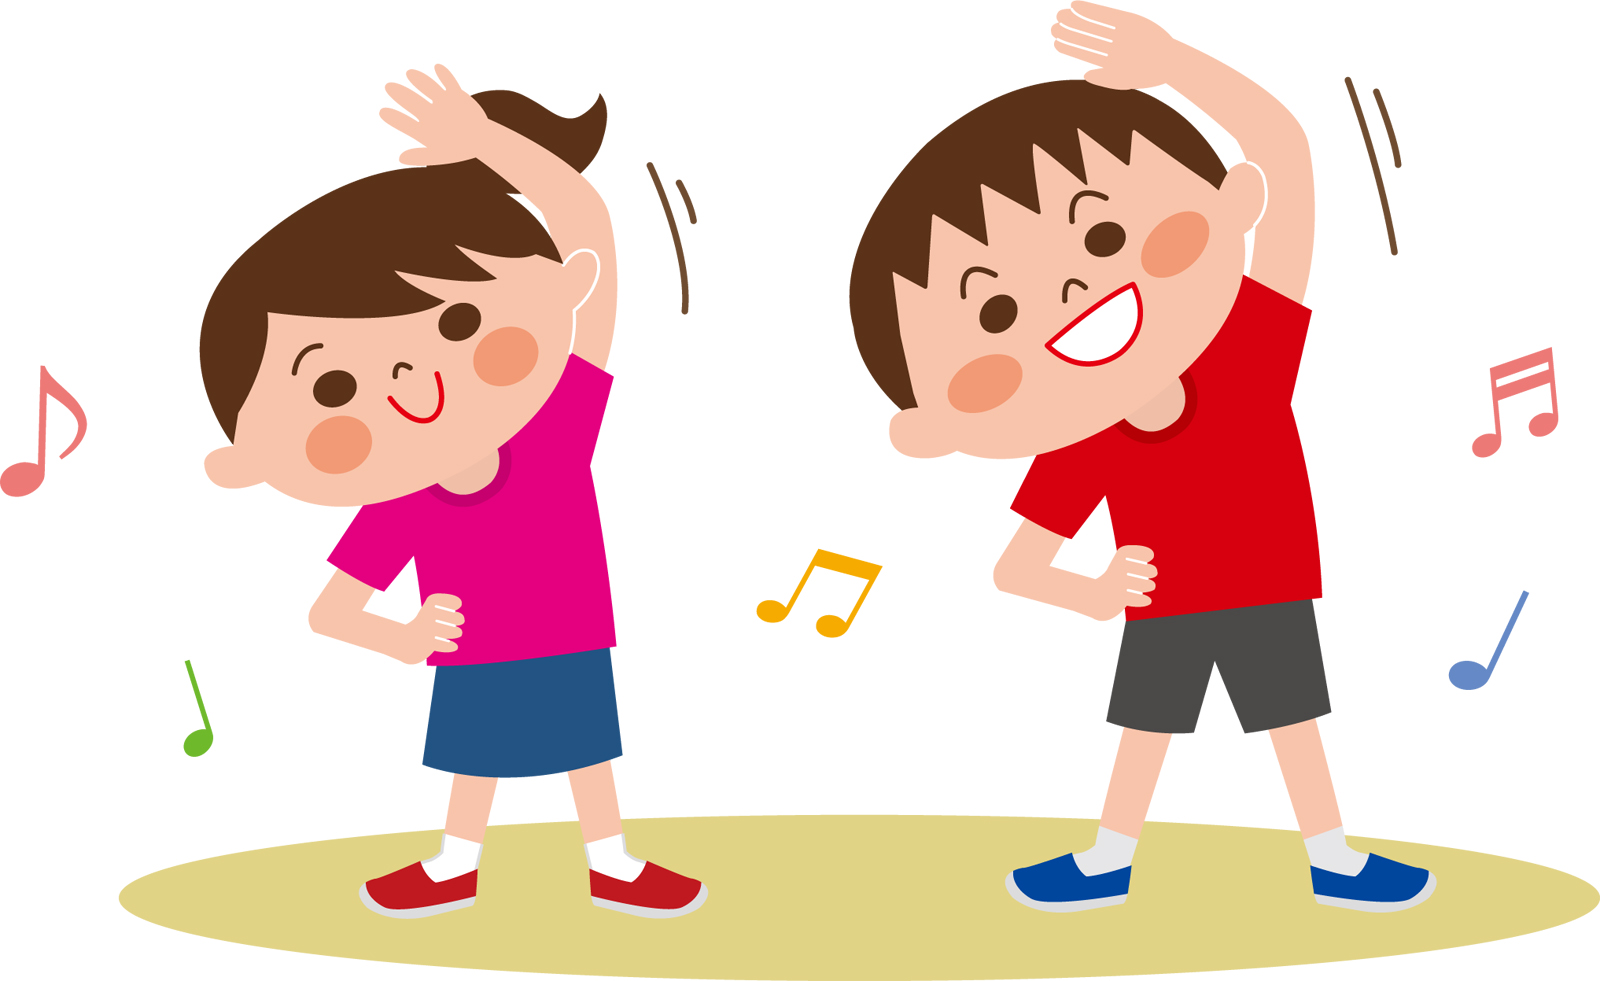 9月23日(土・祝)は草津川跡地公園 de愛ひろばの”健幸フェア”に行こう！パークヨガやたび丸体操もあるよ！